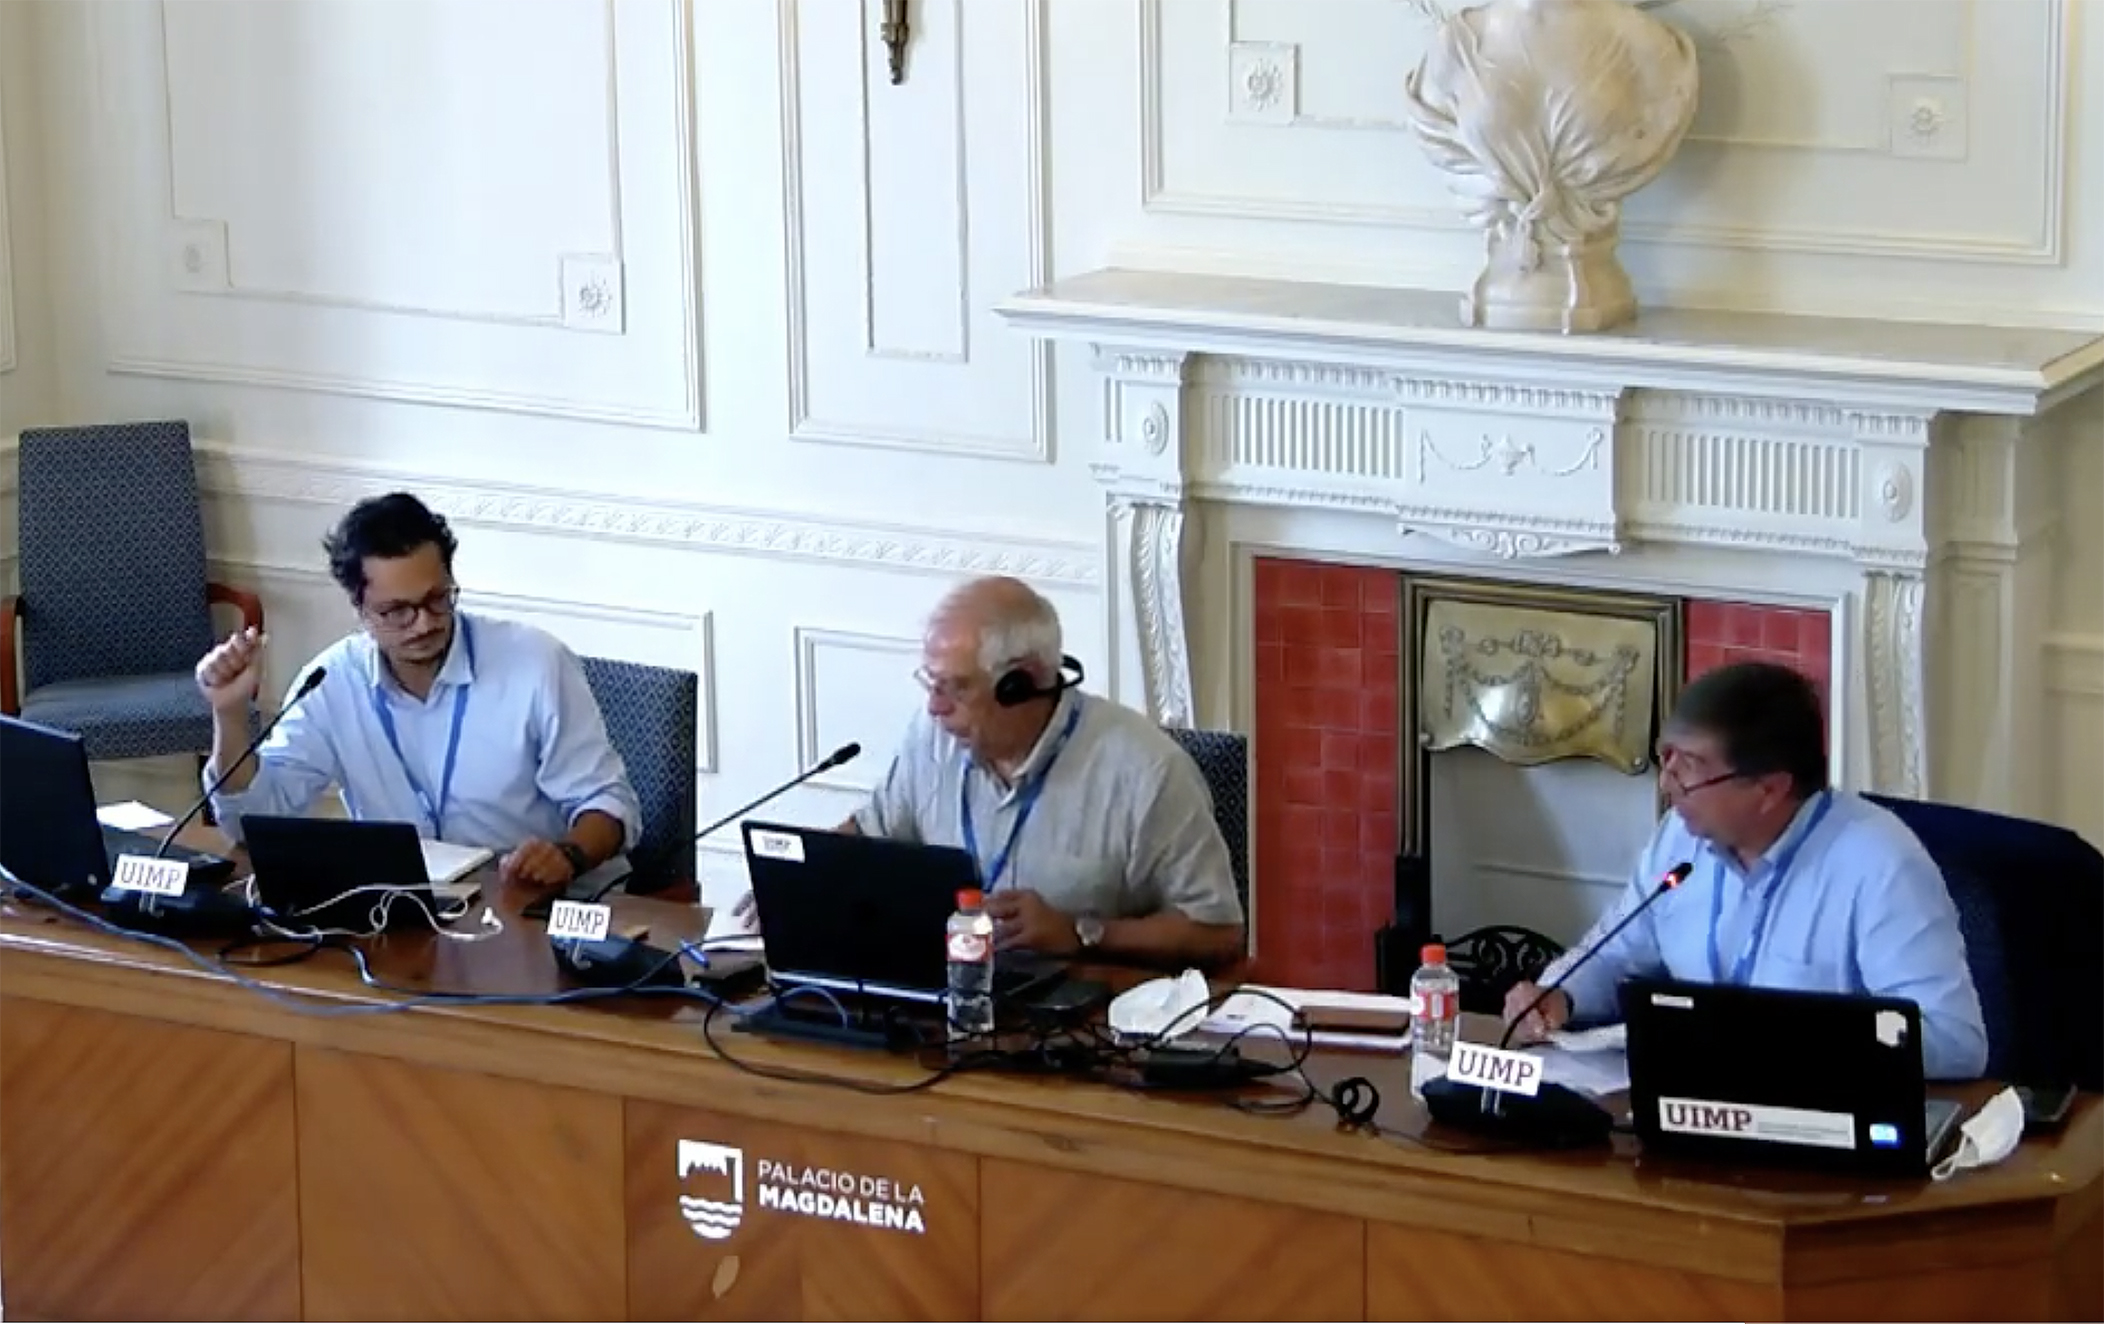 Imagen seminario UIMP agosto 2020 con Marcelo Ebrard, José Antonio Sanahuja y Josep Borrell